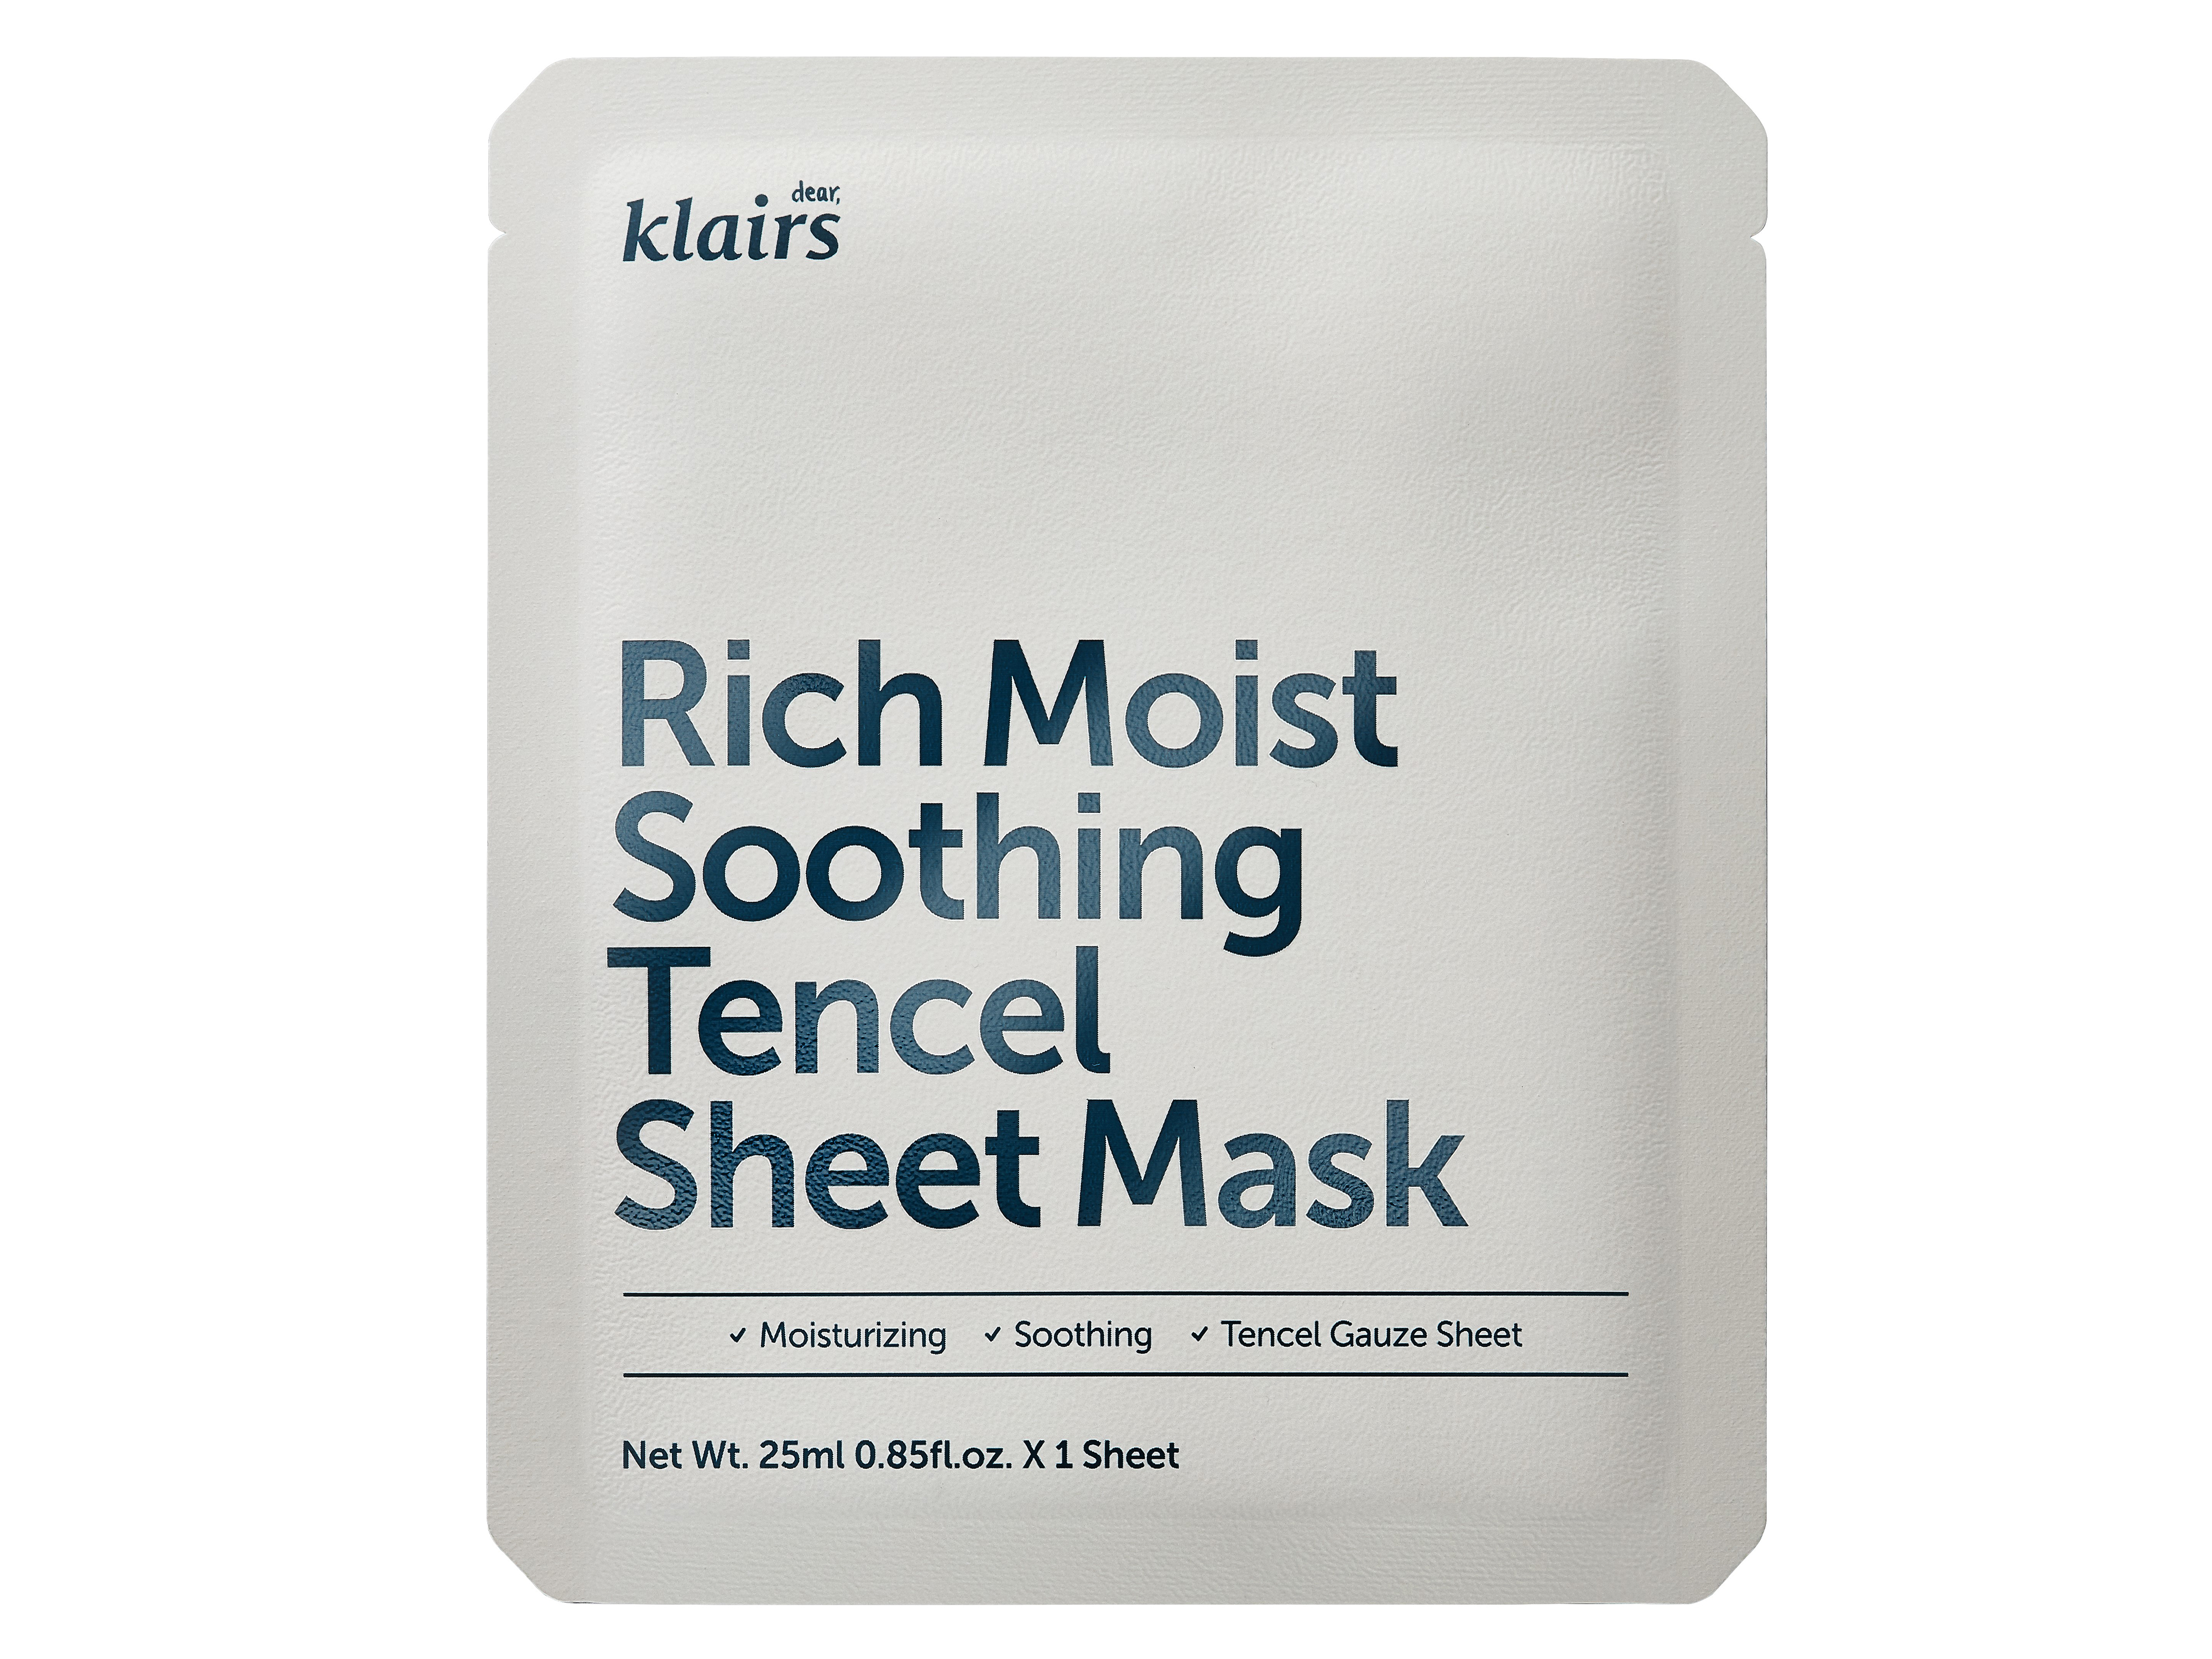 Rich Moist Soothing Tencel Sheet Mask, 1 stk